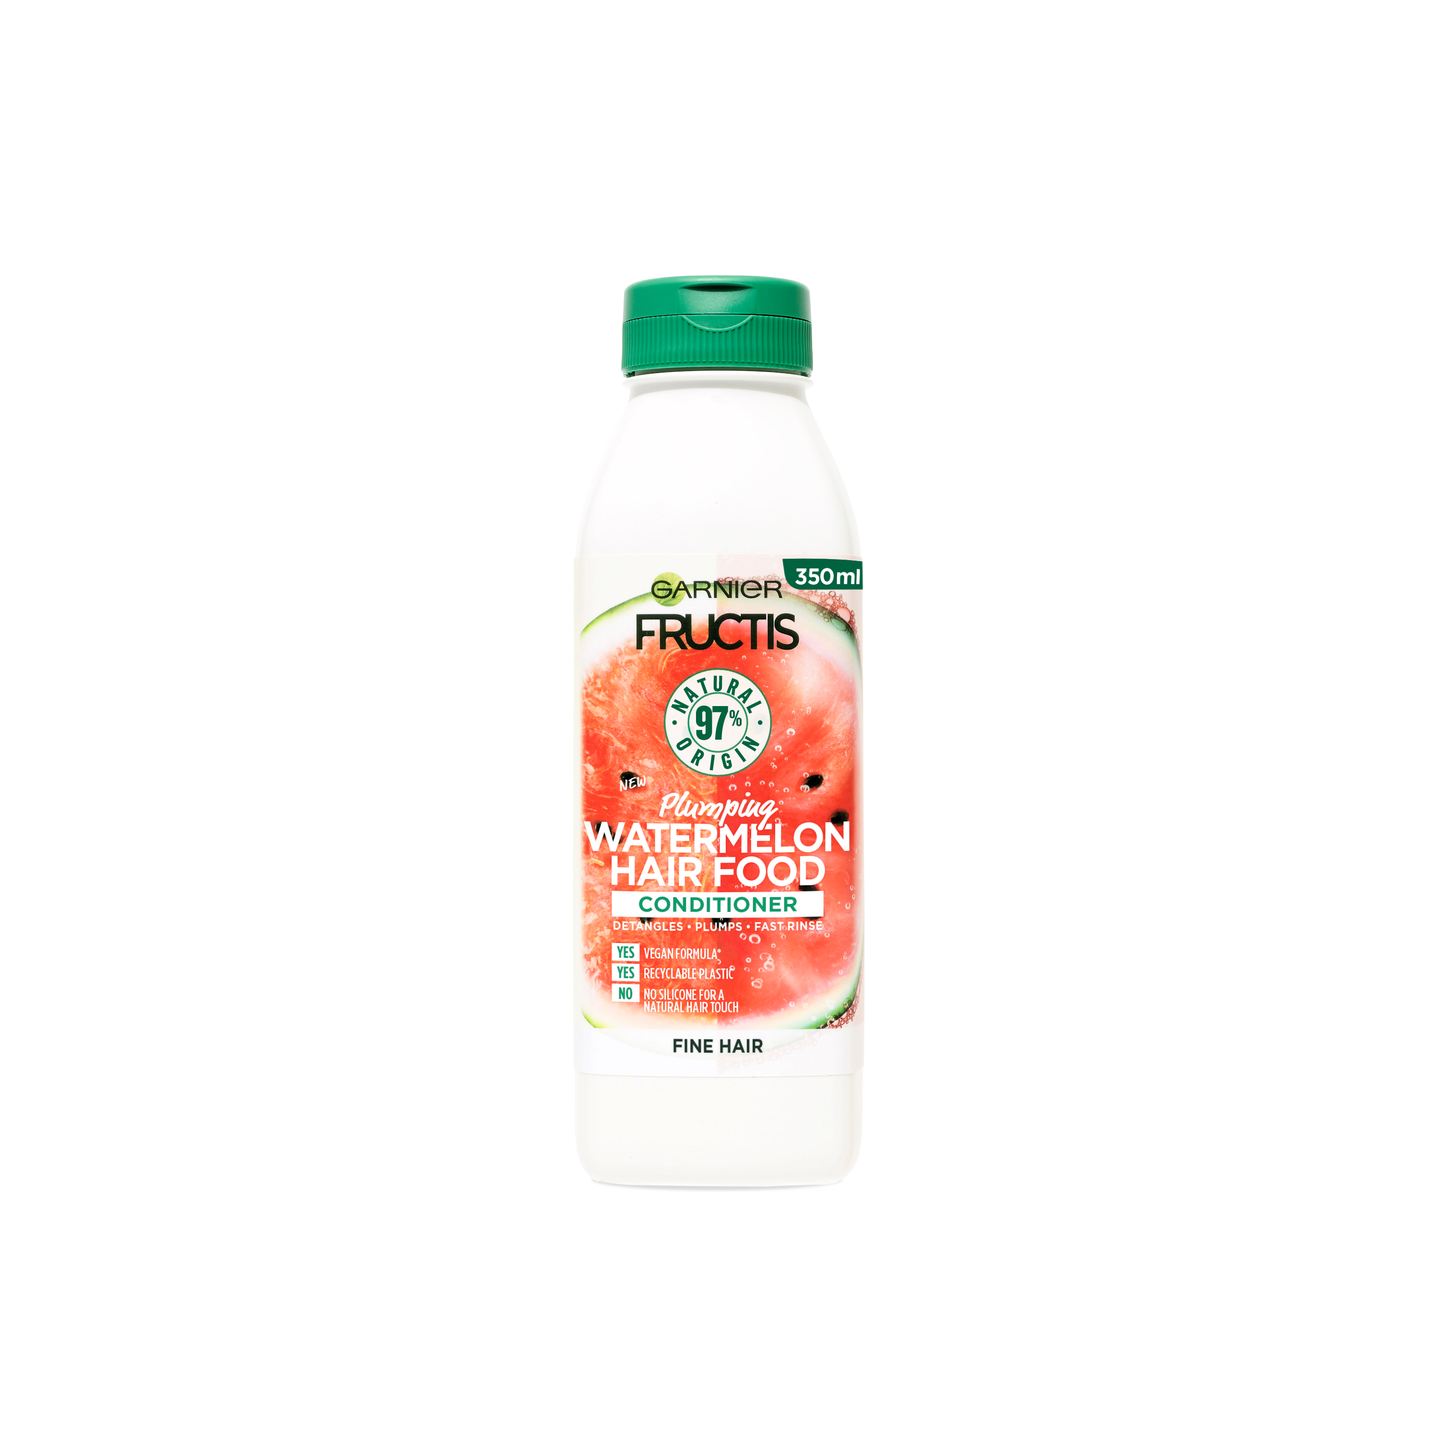 Garnier Fructis Hair Food Watermelon hoitoaine hennoille hiuksille 350ml